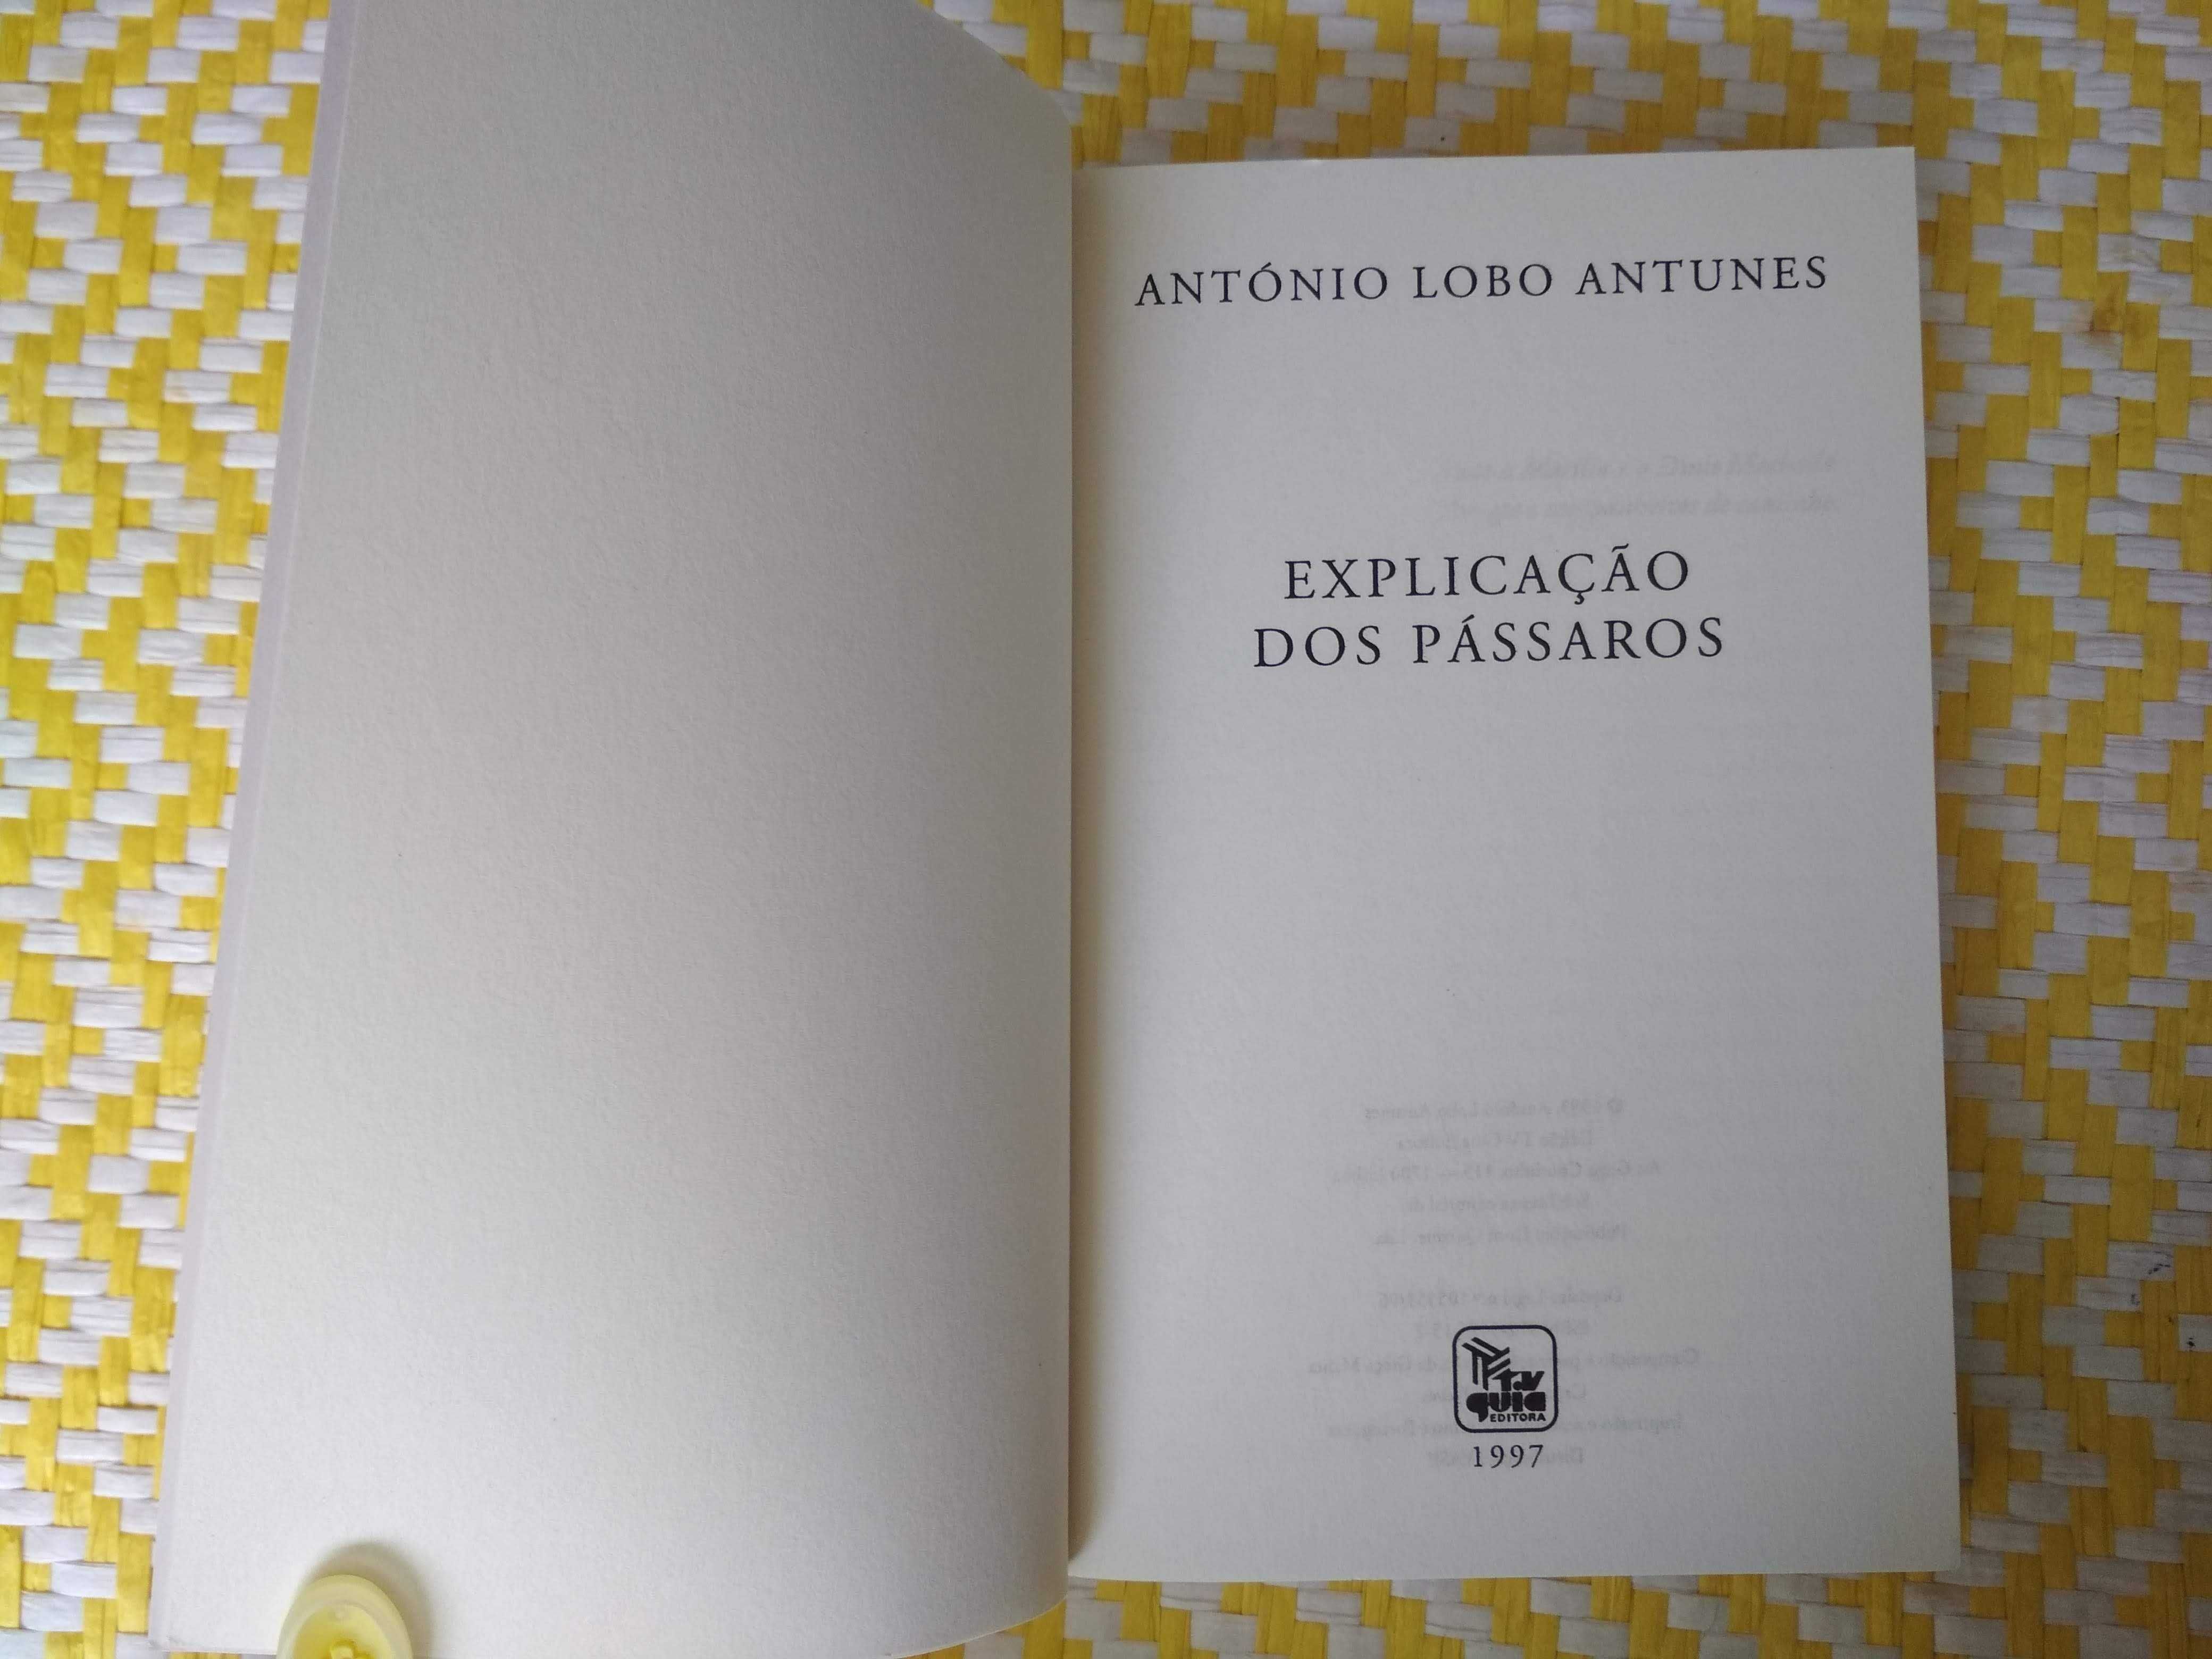 Explicação dos Pássaros
António Lobo Antunes